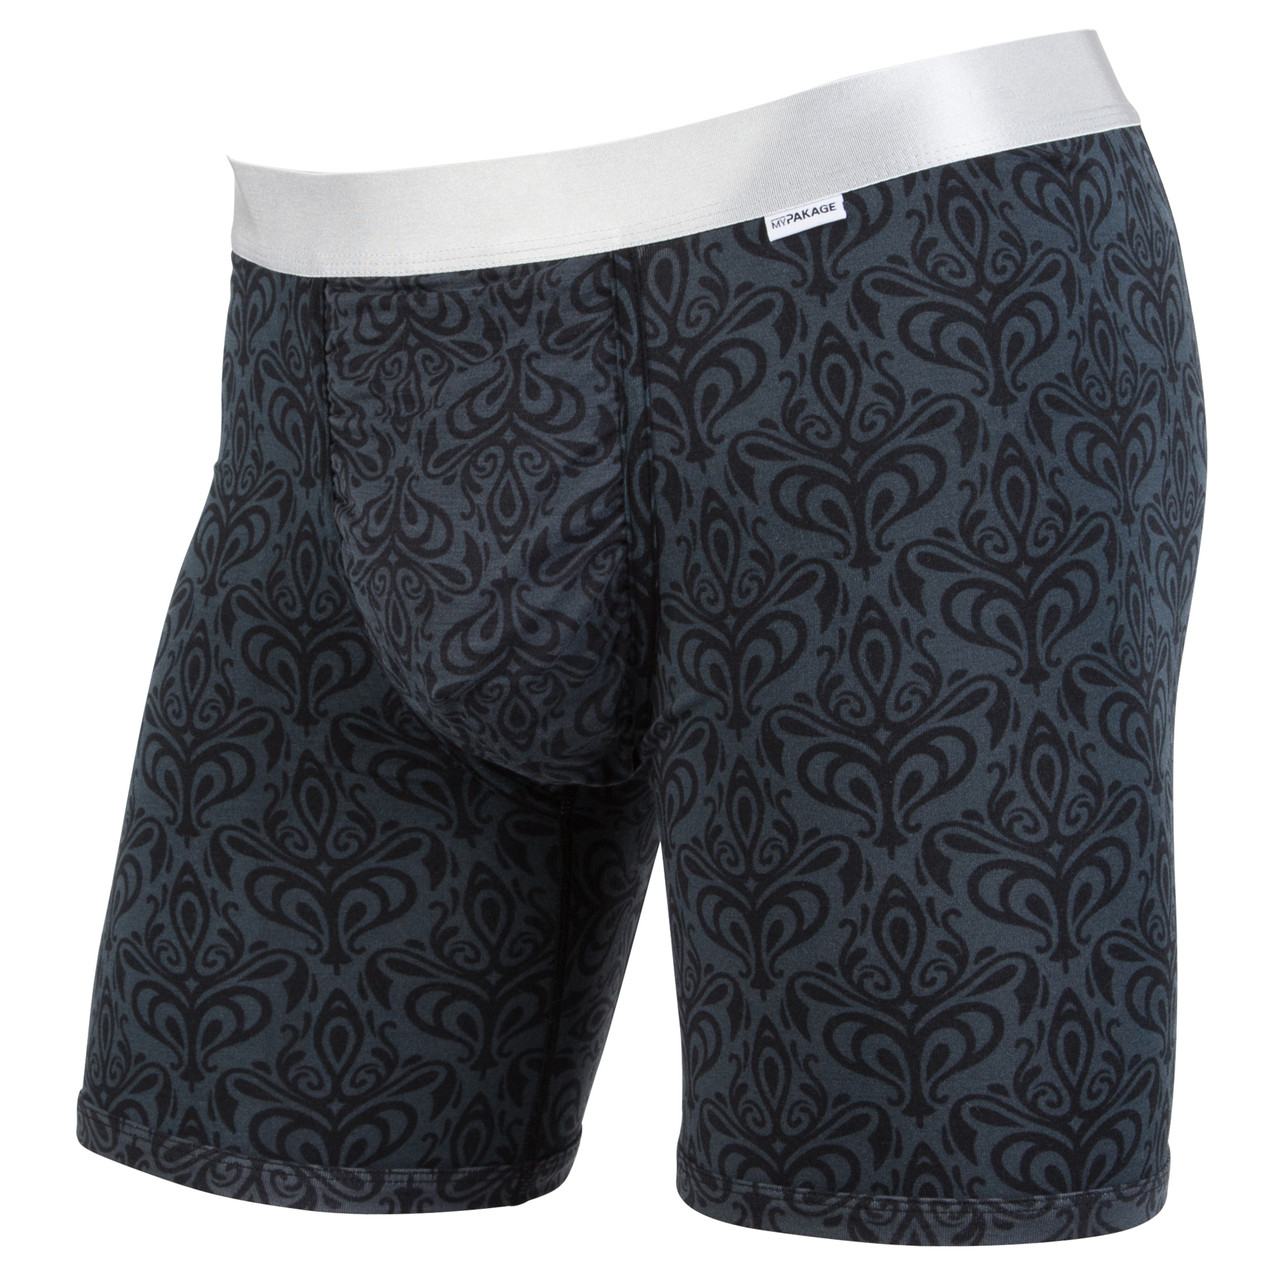 MyPakage Men's CHOICE OF PREMIUM YARNDYE Boxer Brief Underwear NEW IN BOX!